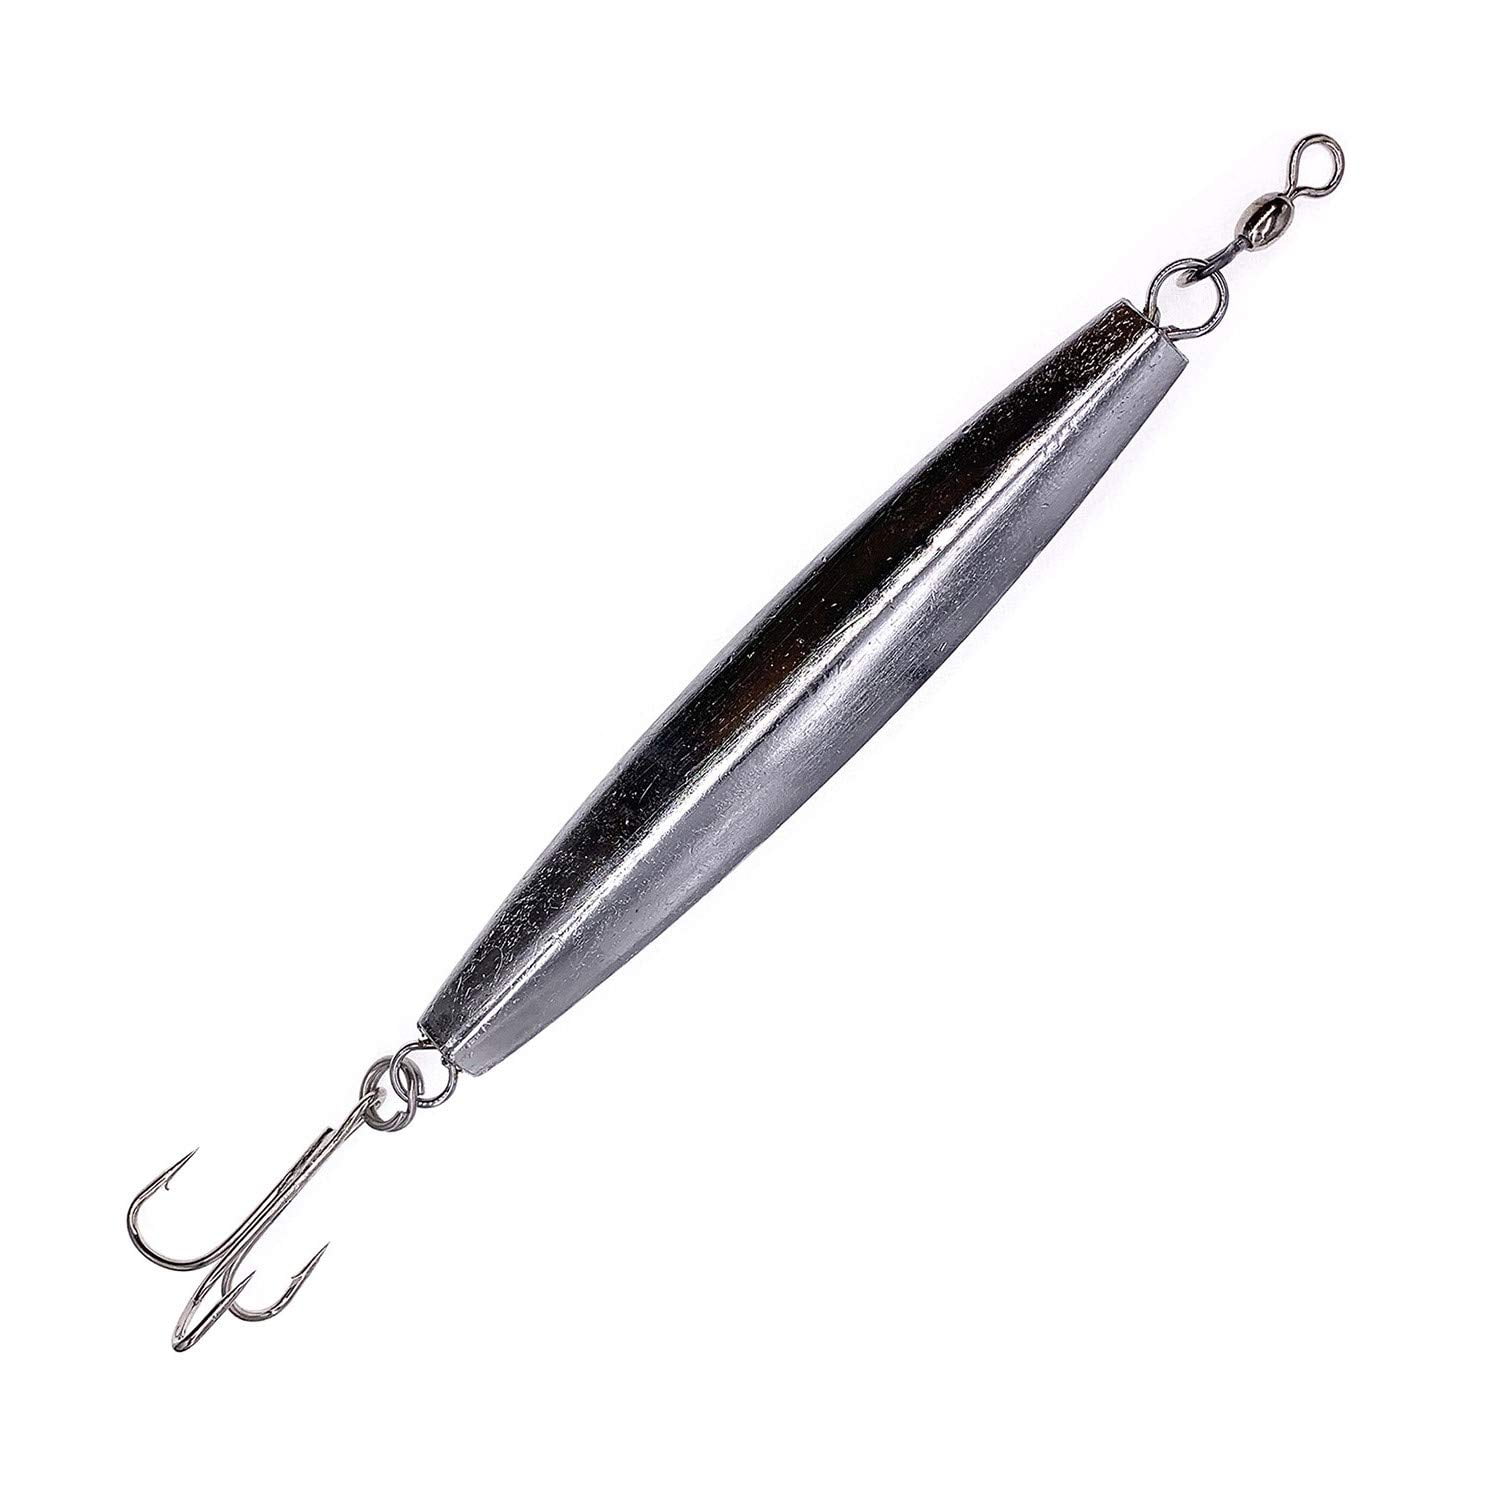 10pcs 10oz Fishing Diamond Jig Chrome Silver w/ a treble hook Jigging Metal Lure 